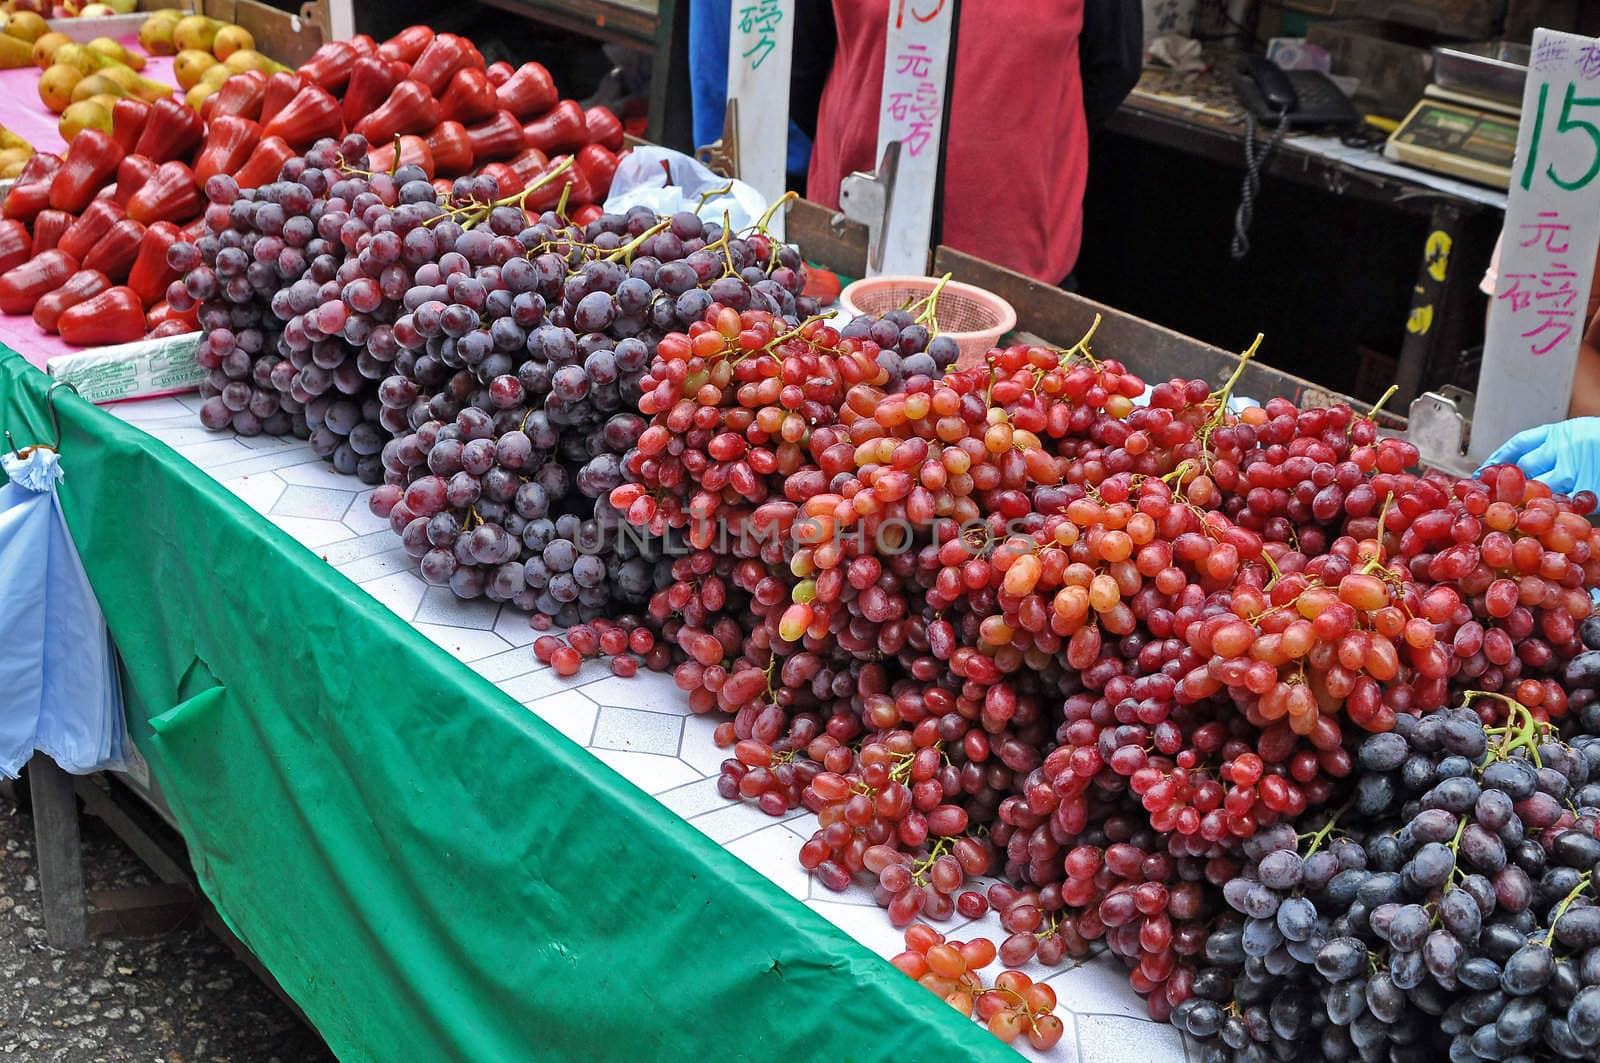 Grapes and fruits at a market stand in Hong Kong